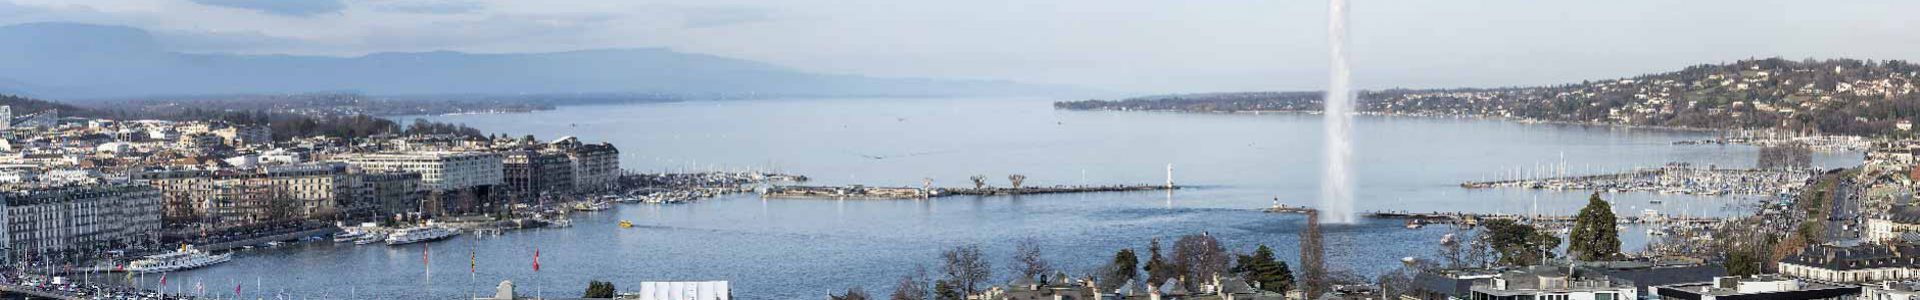 Panorama de la Ville de Genève avec le Jet d'eau